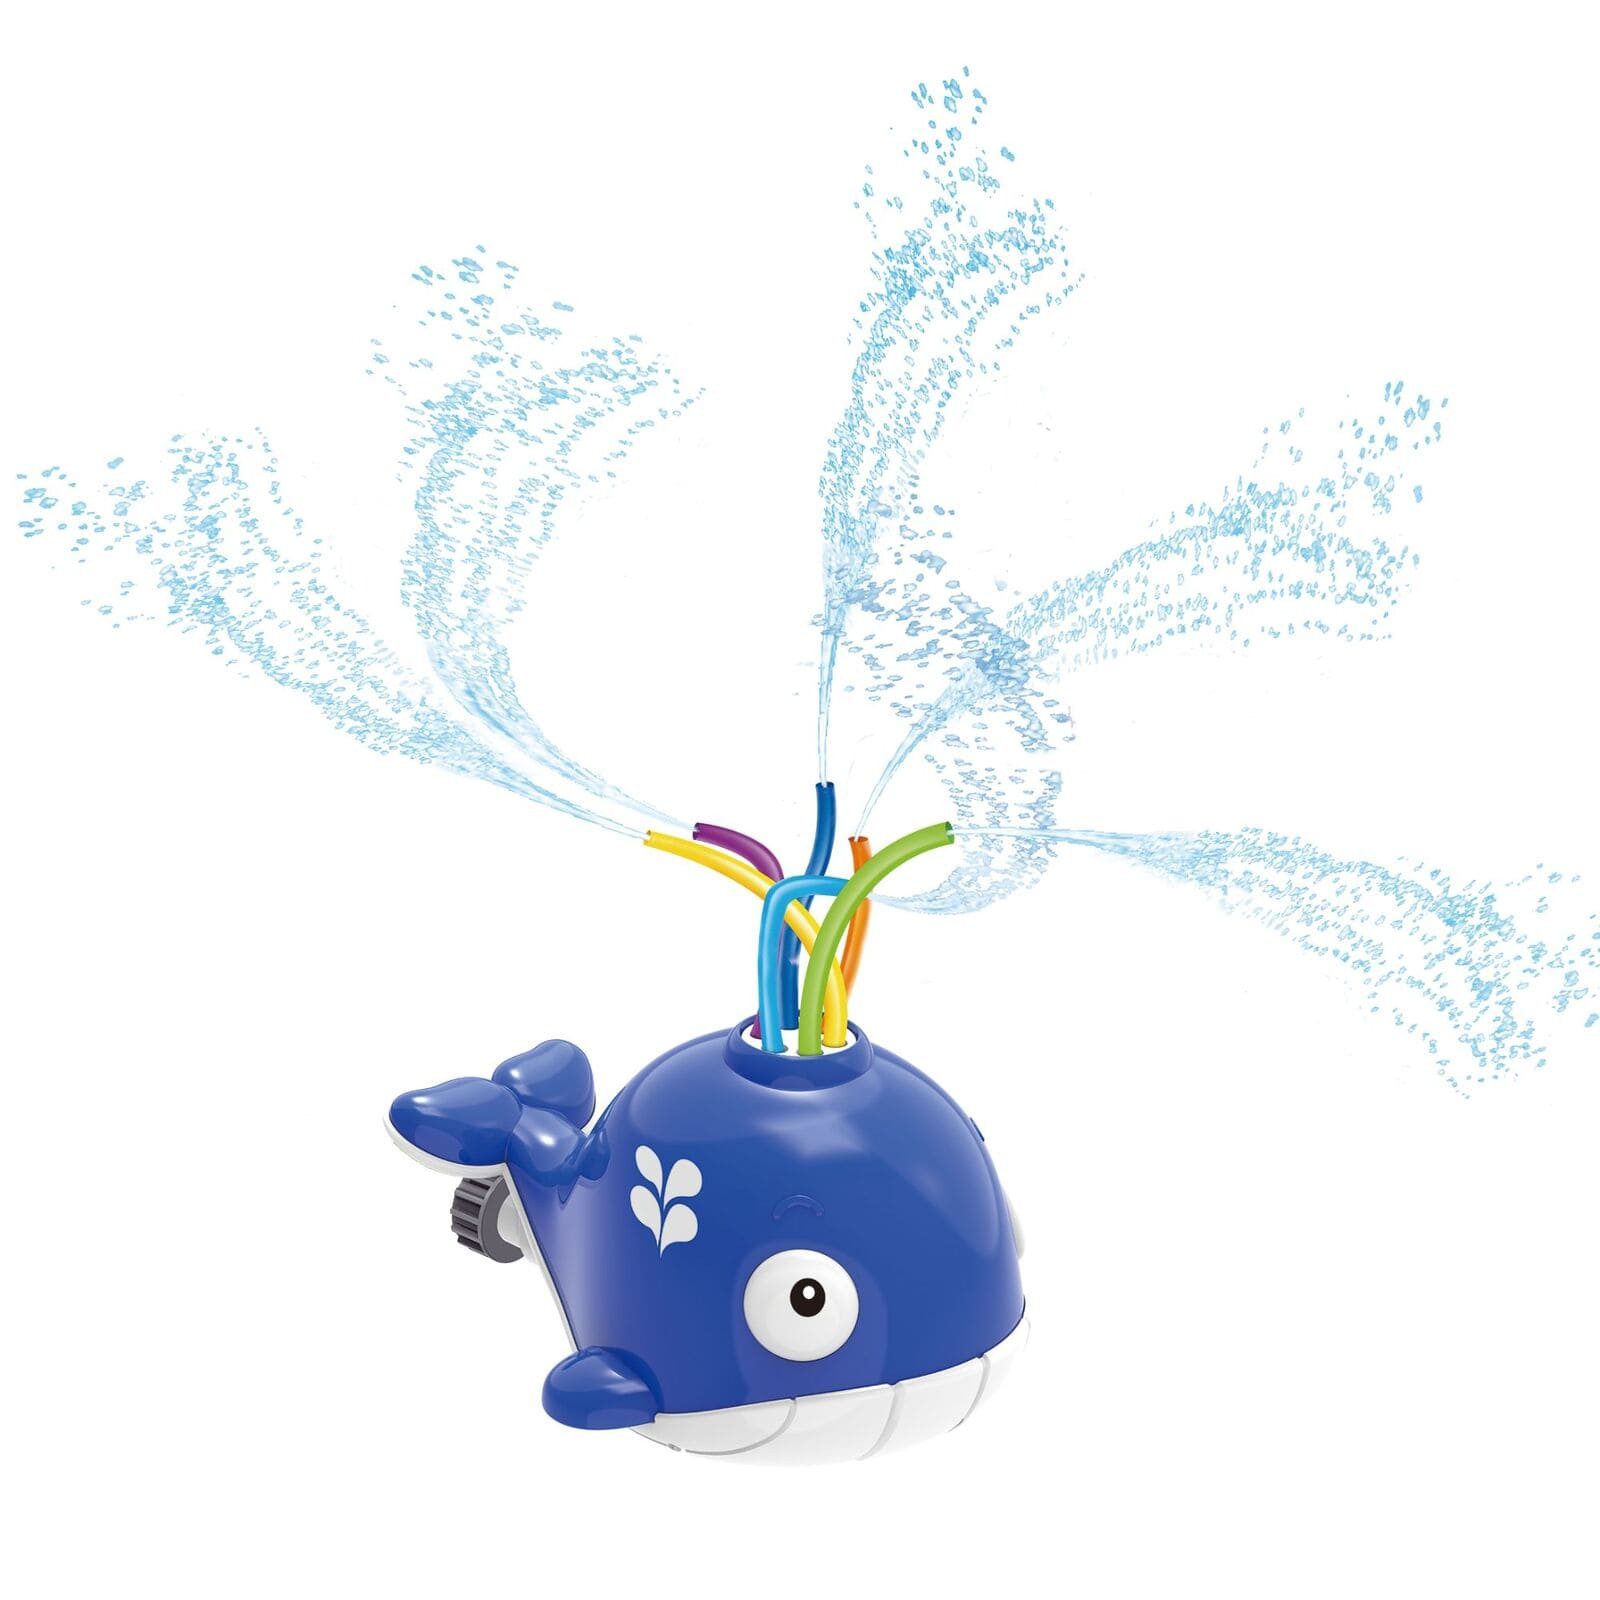 alldoro Spiel-Wassersprenkler 60214, im Wal-Design, Outdoorspielzeug für spritzige Abkühlung im Sommer